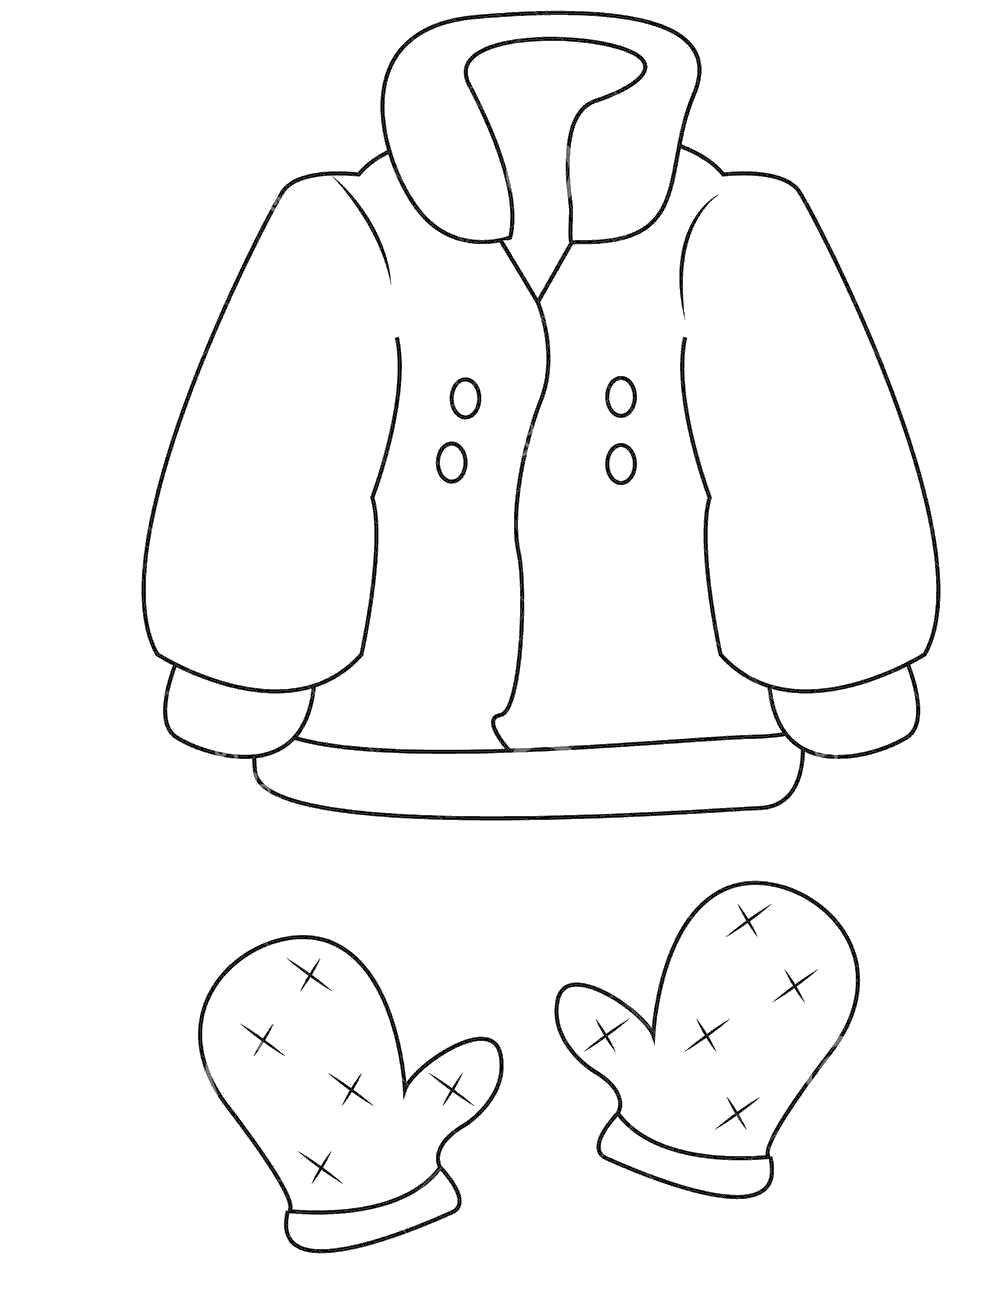 Coat clipart mitten, Picture #2523916 coat clipart mitten